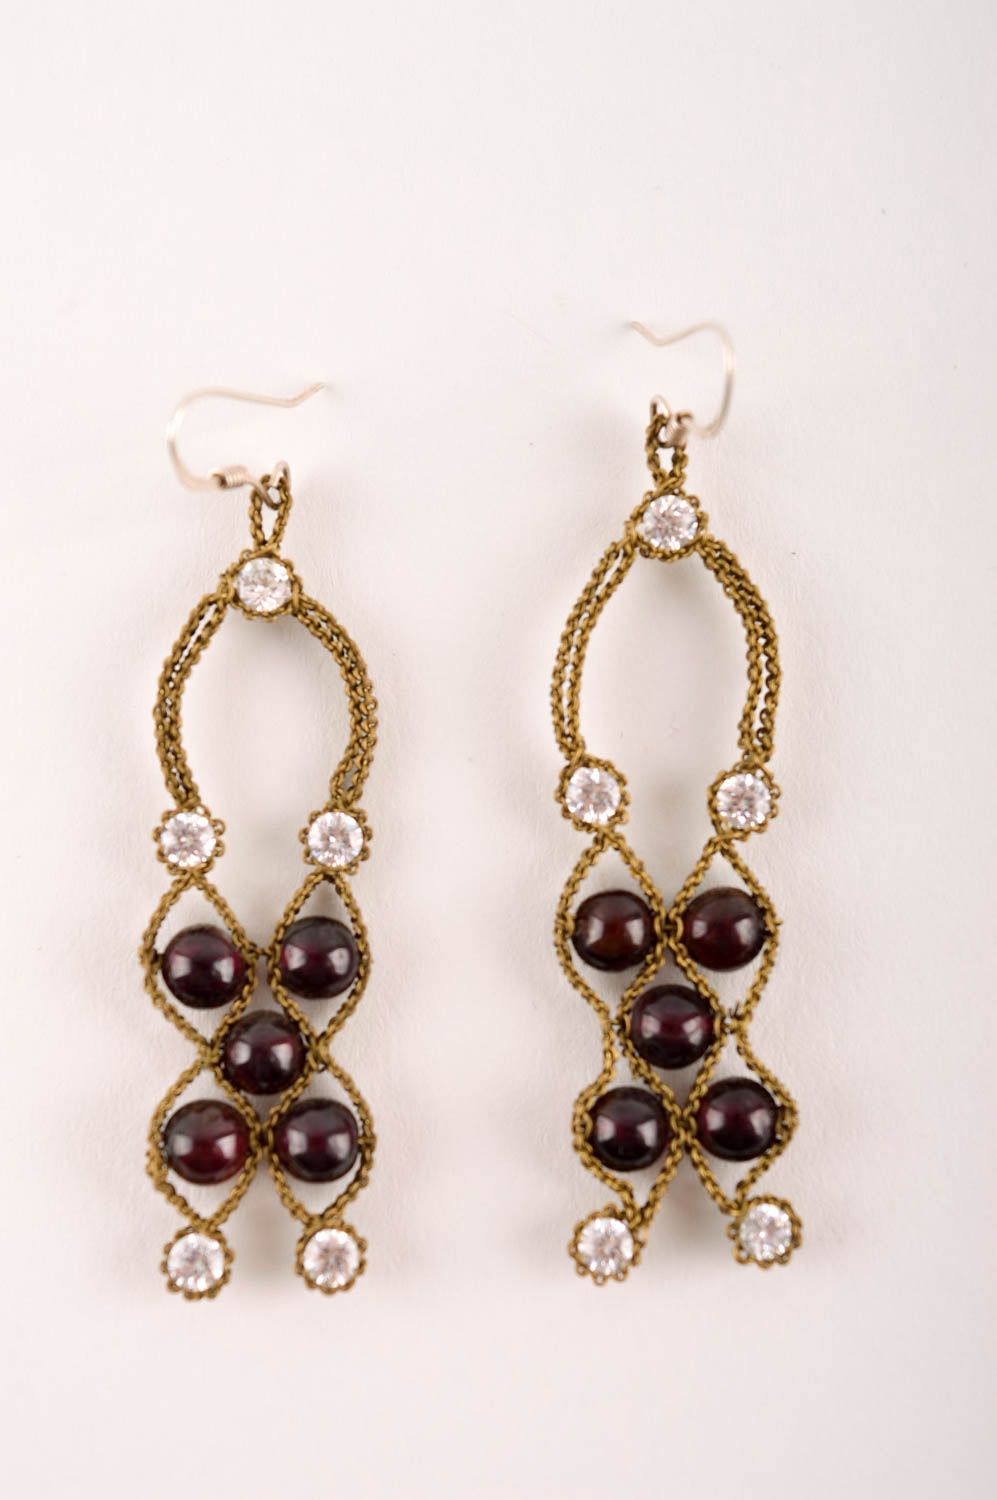 Beautiful handmade metal earrings gemstone earrings artisan jewelry designs photo 2